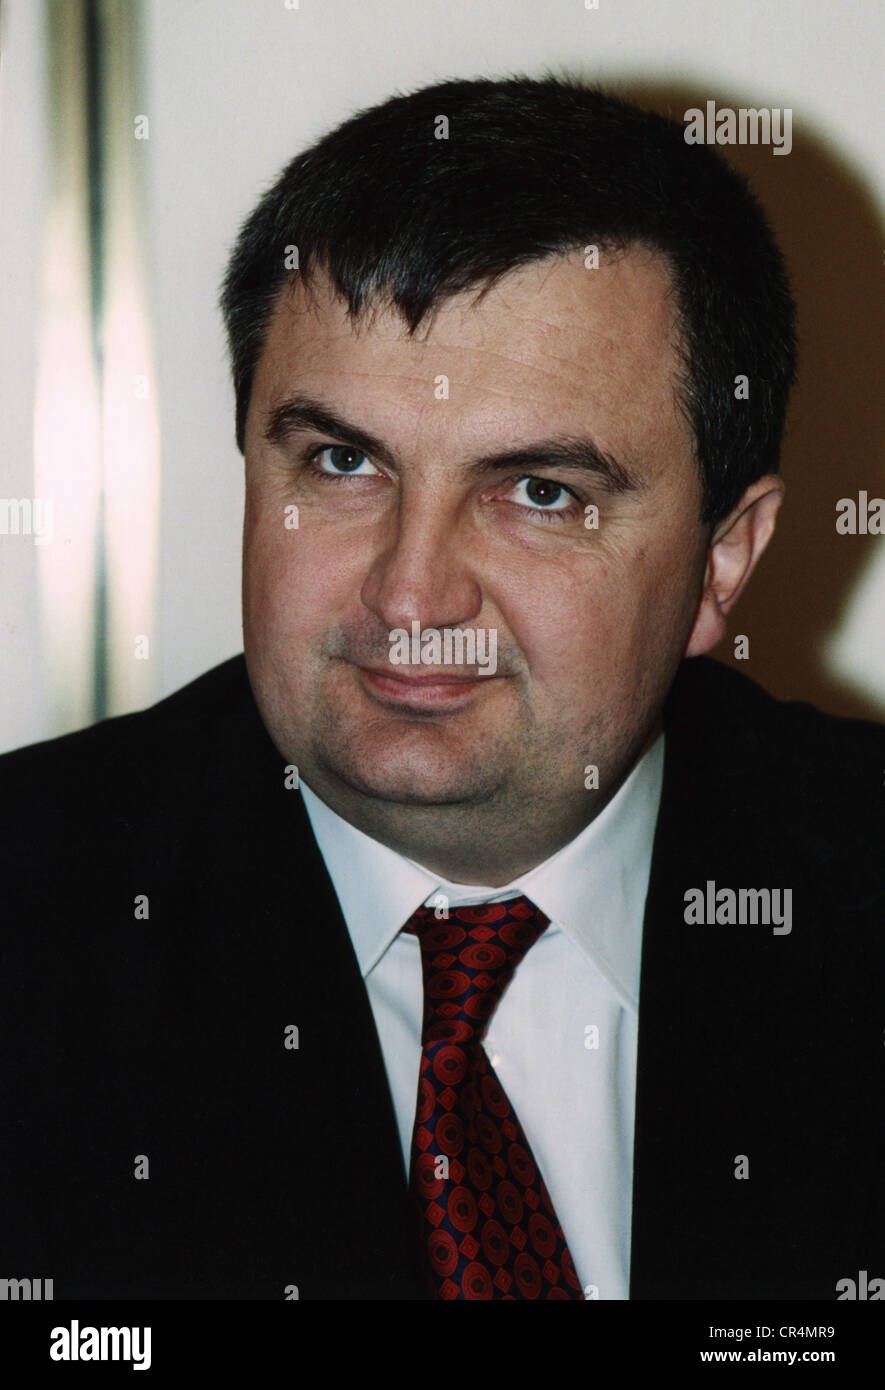 Meta, Ilir, * 24.3.1969, albanischer Politiker, Premierminister von Albanien 1999-2002, Porträt, 2001 Stockfoto